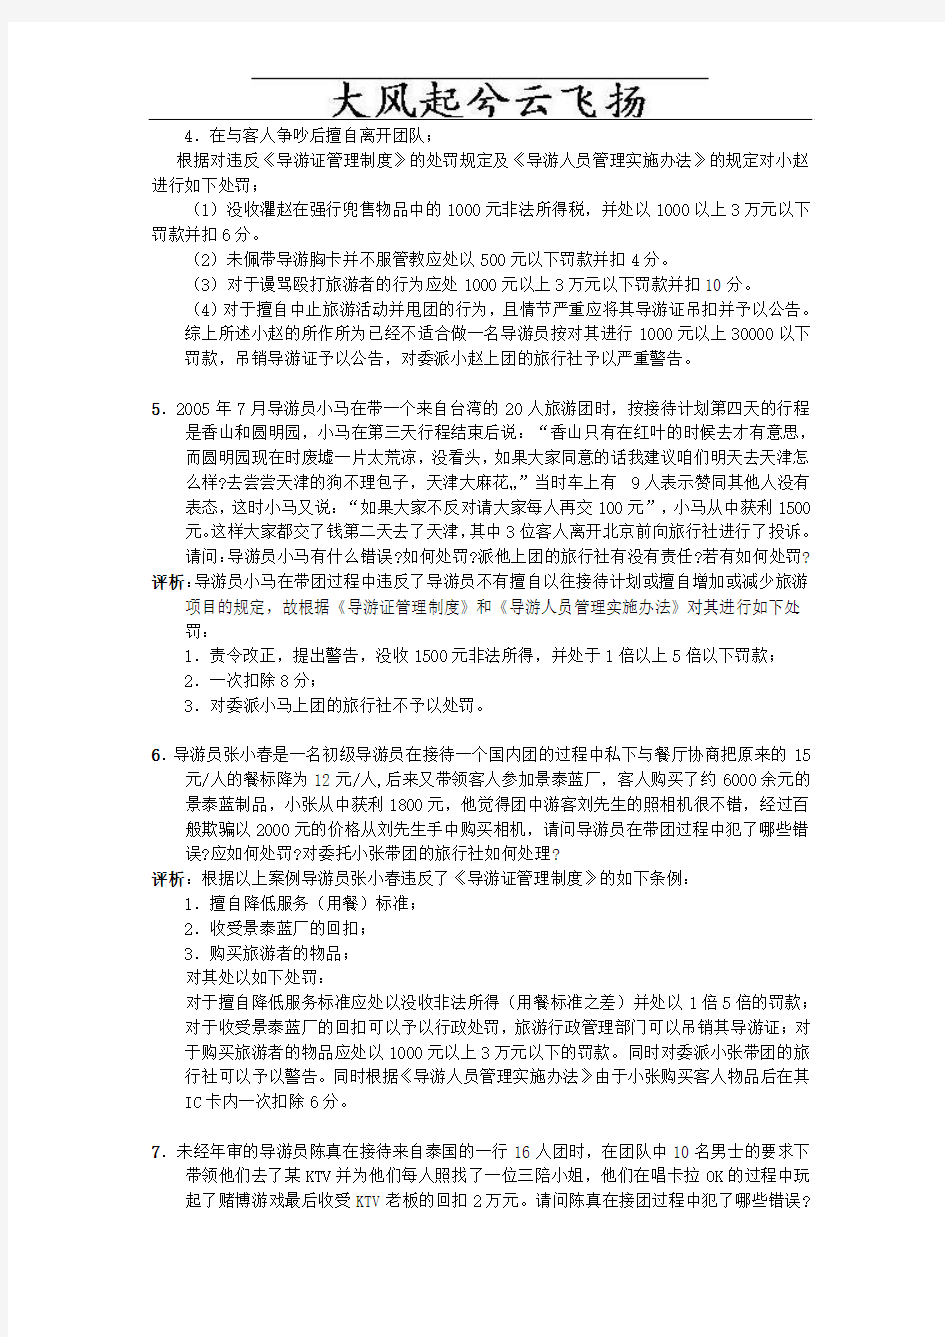 解析导游资格考试(北京)20案例分析题